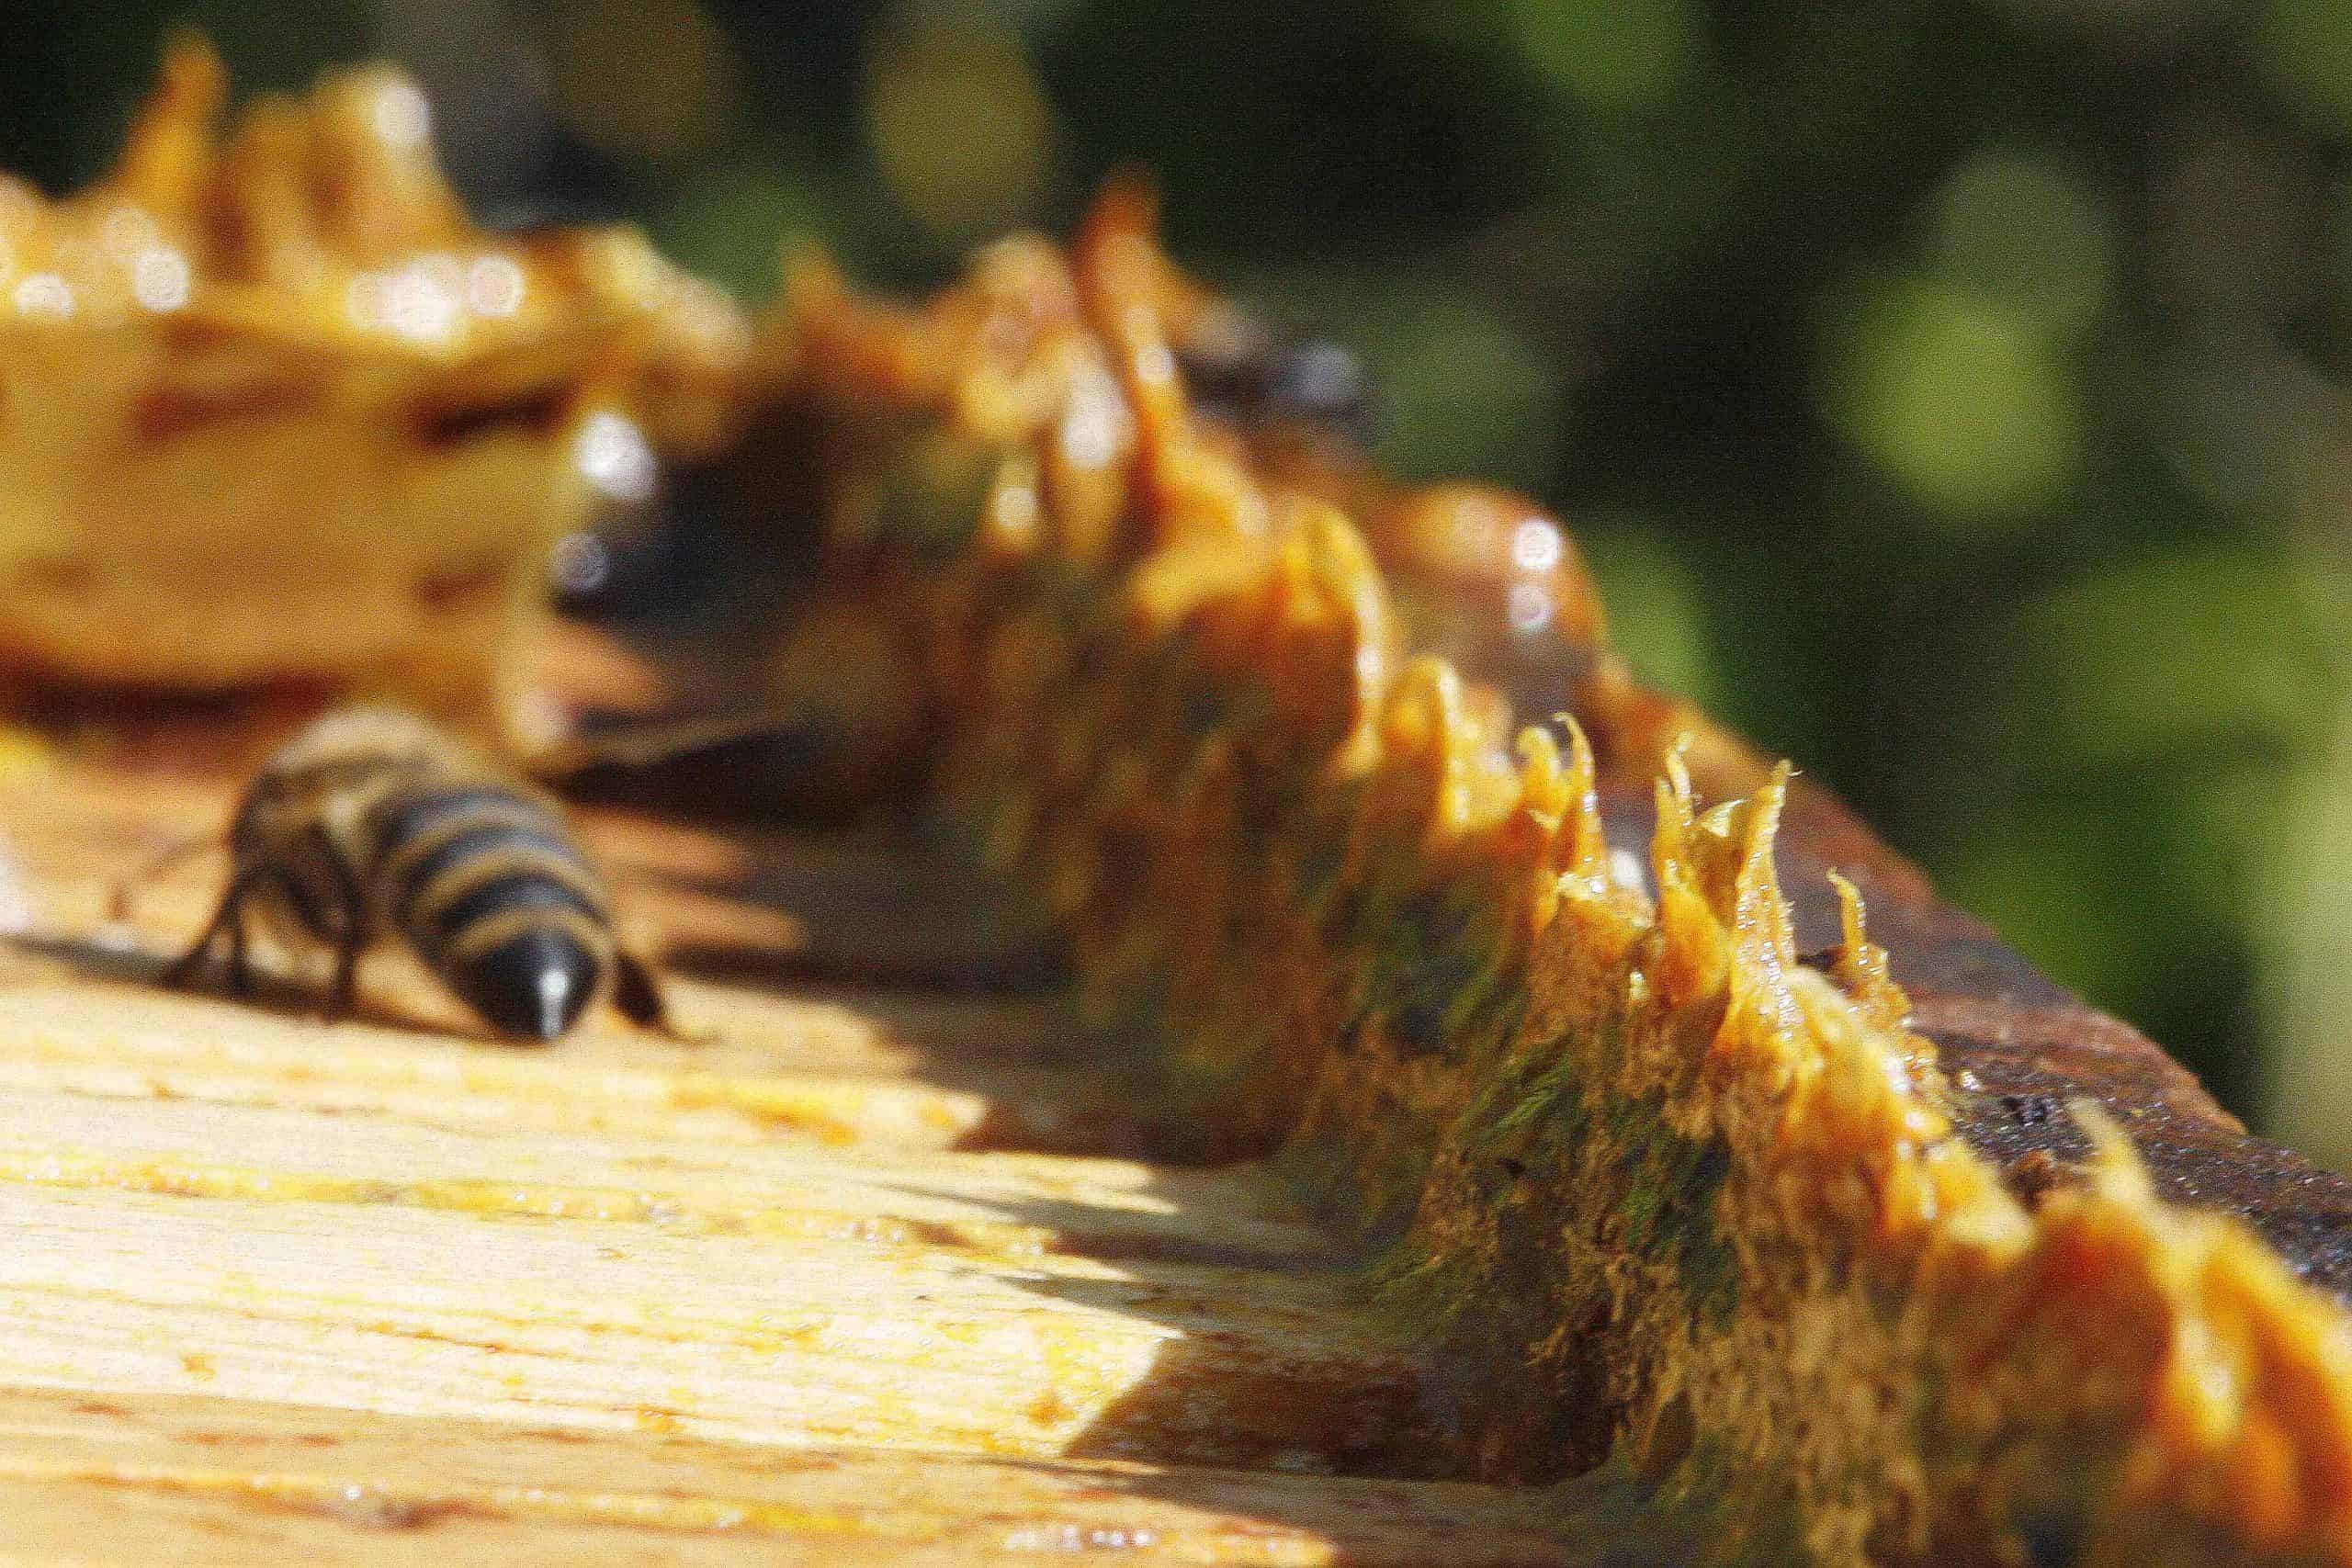 Strange comb in strange places - Honey Bee Suite